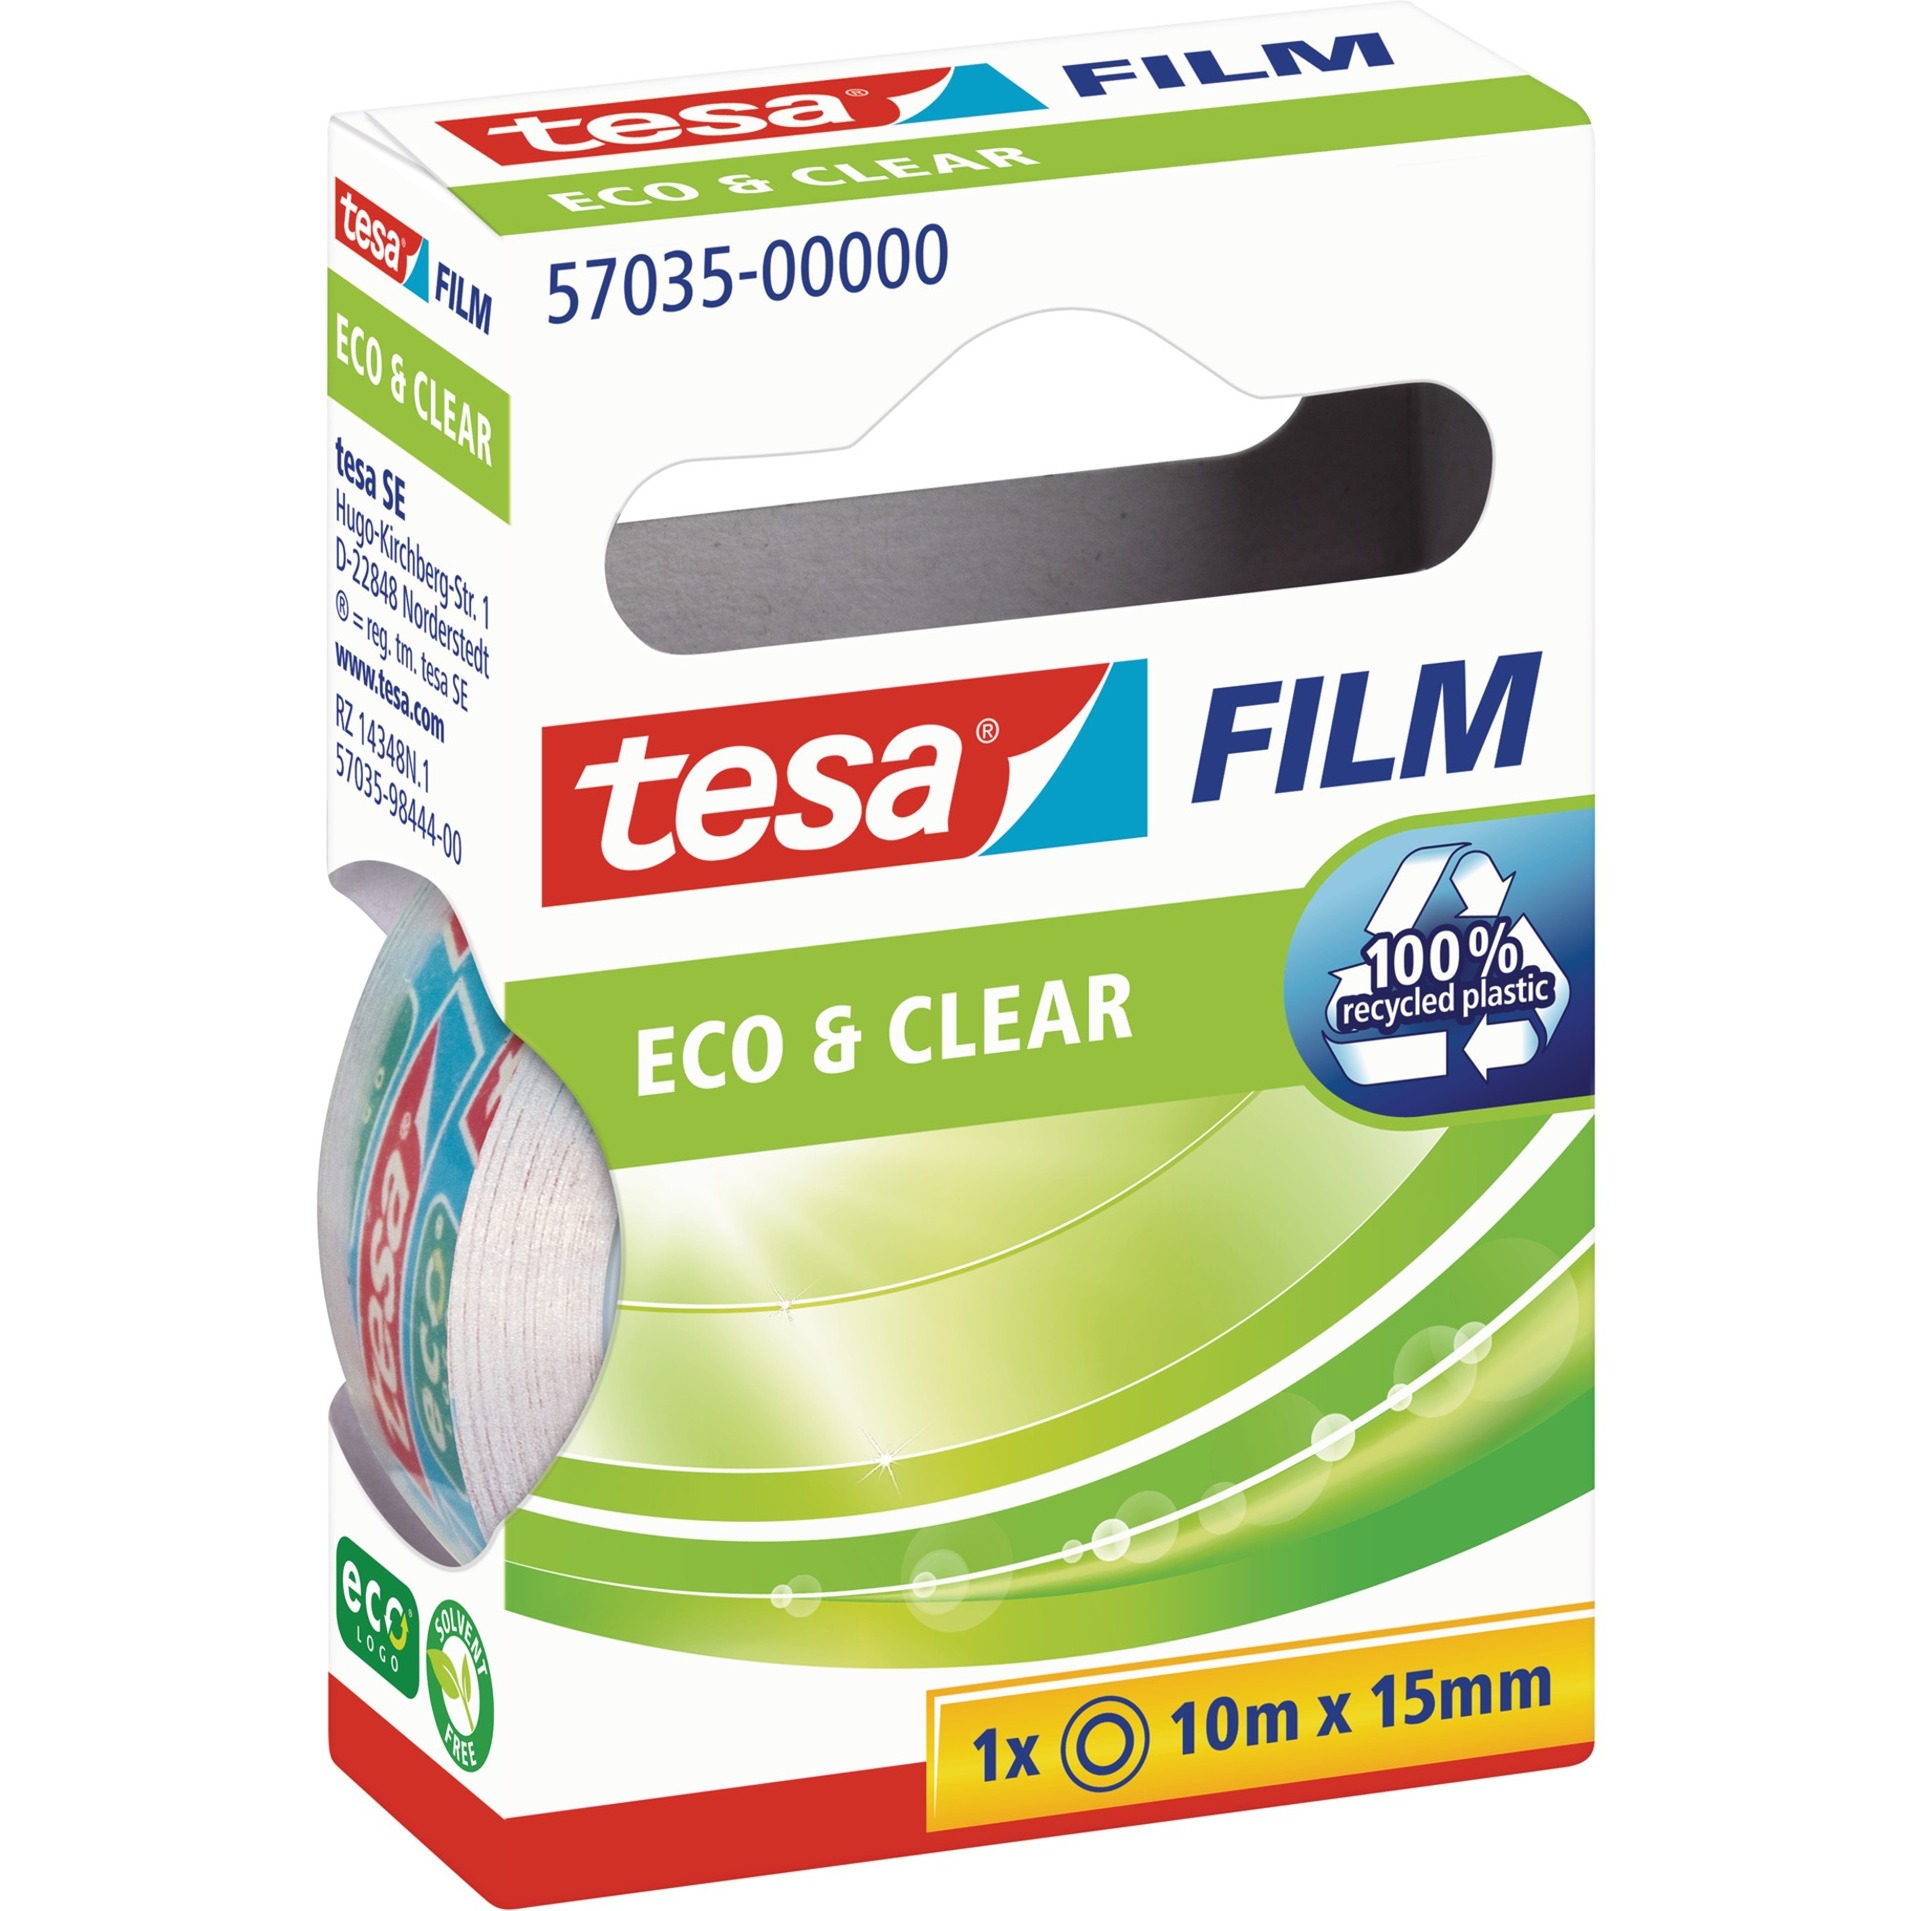 Image of Alternate - tesafilm eco & clear, 1 Rolle, 15mm, Klebeband online einkaufen bei Alternate